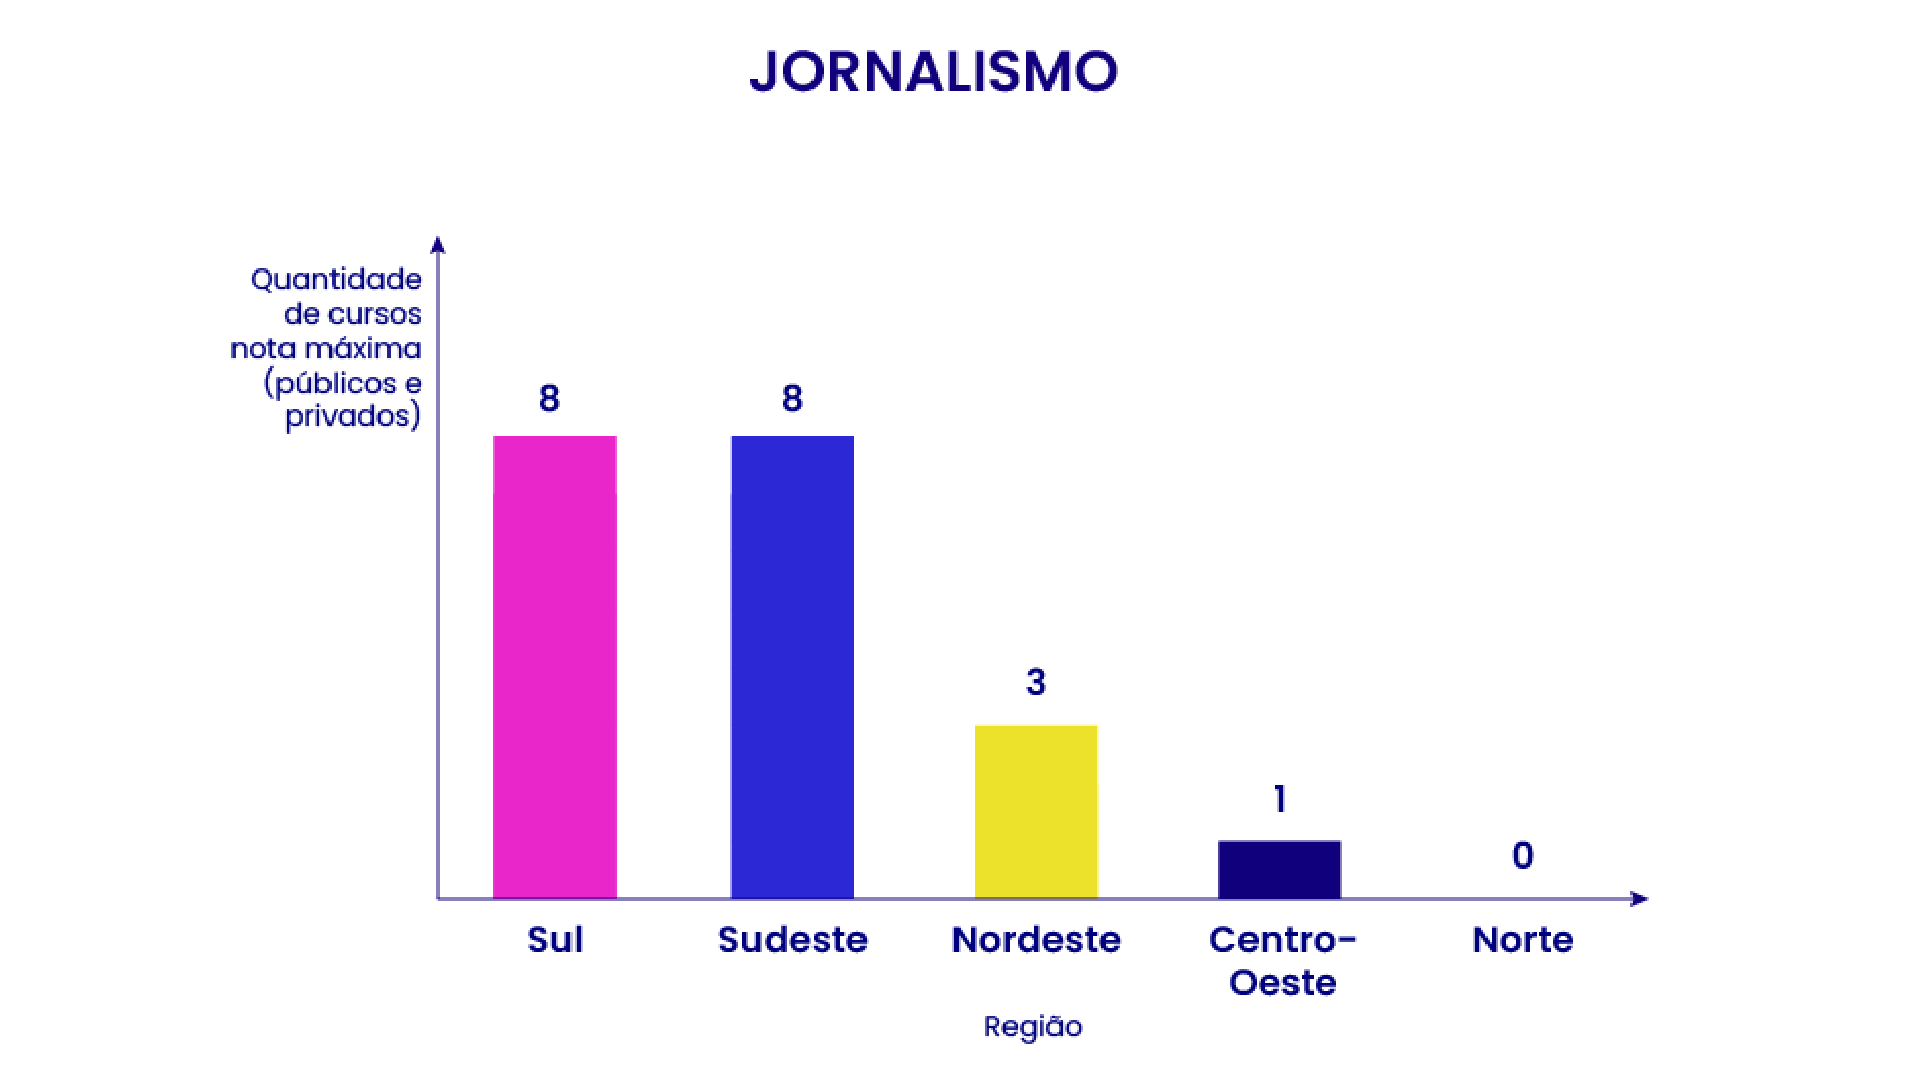 Gráfico de barras indicando a quantidade de cursos de Jornalismo com nota máxima por região do Brasil: 8 no Sudeste e Sul, 3 no Nordeste, 1 no Centro-Oeste e nenhum no Norte